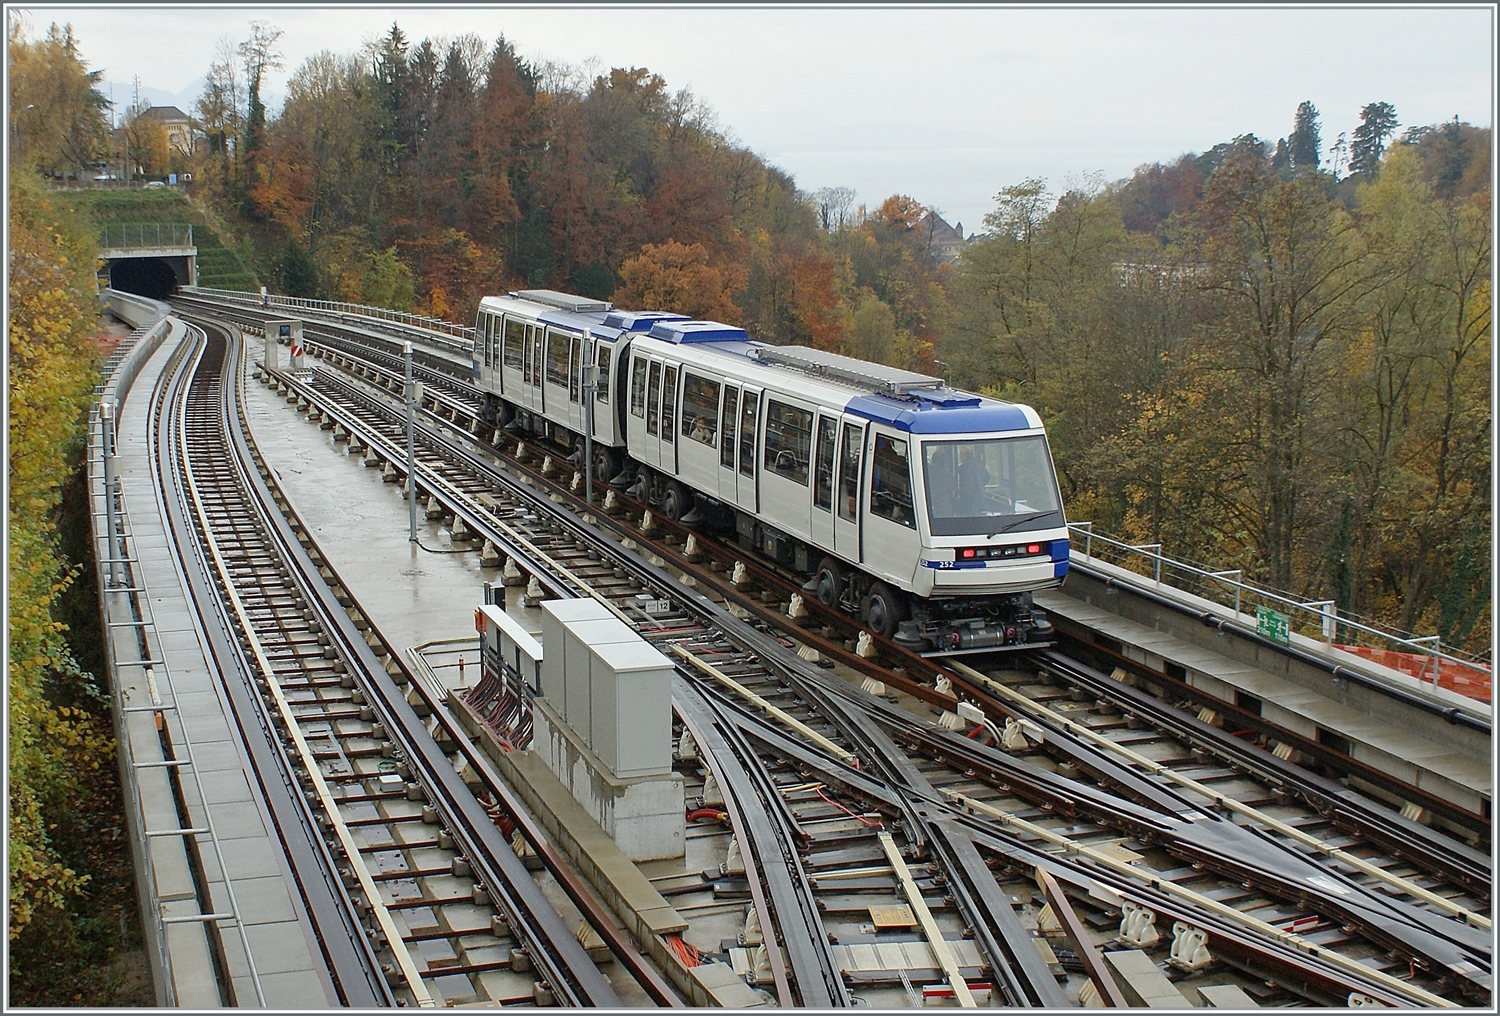 Der TL Be 8/8 252 der Linie M2 bei der Haltestelle La Sallaz, wo die Gleisanlagen auch ein Abstellen der Züge erlauben. Zudem wenden einige Züge hier.

9. November 2008